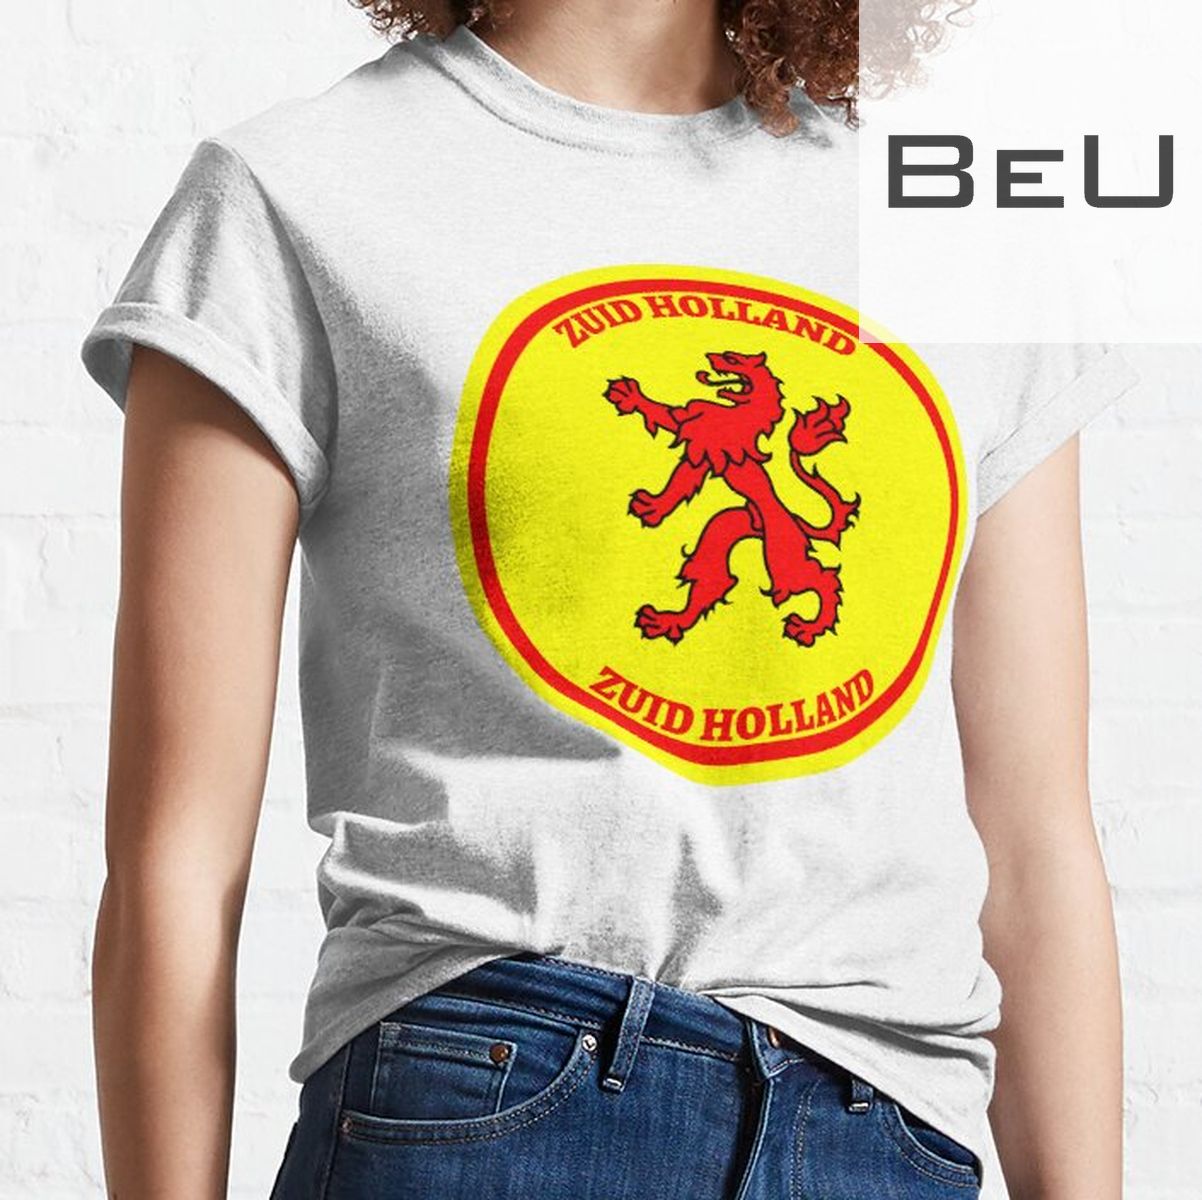 Dutch Province Of Zuid Holland T-shirt